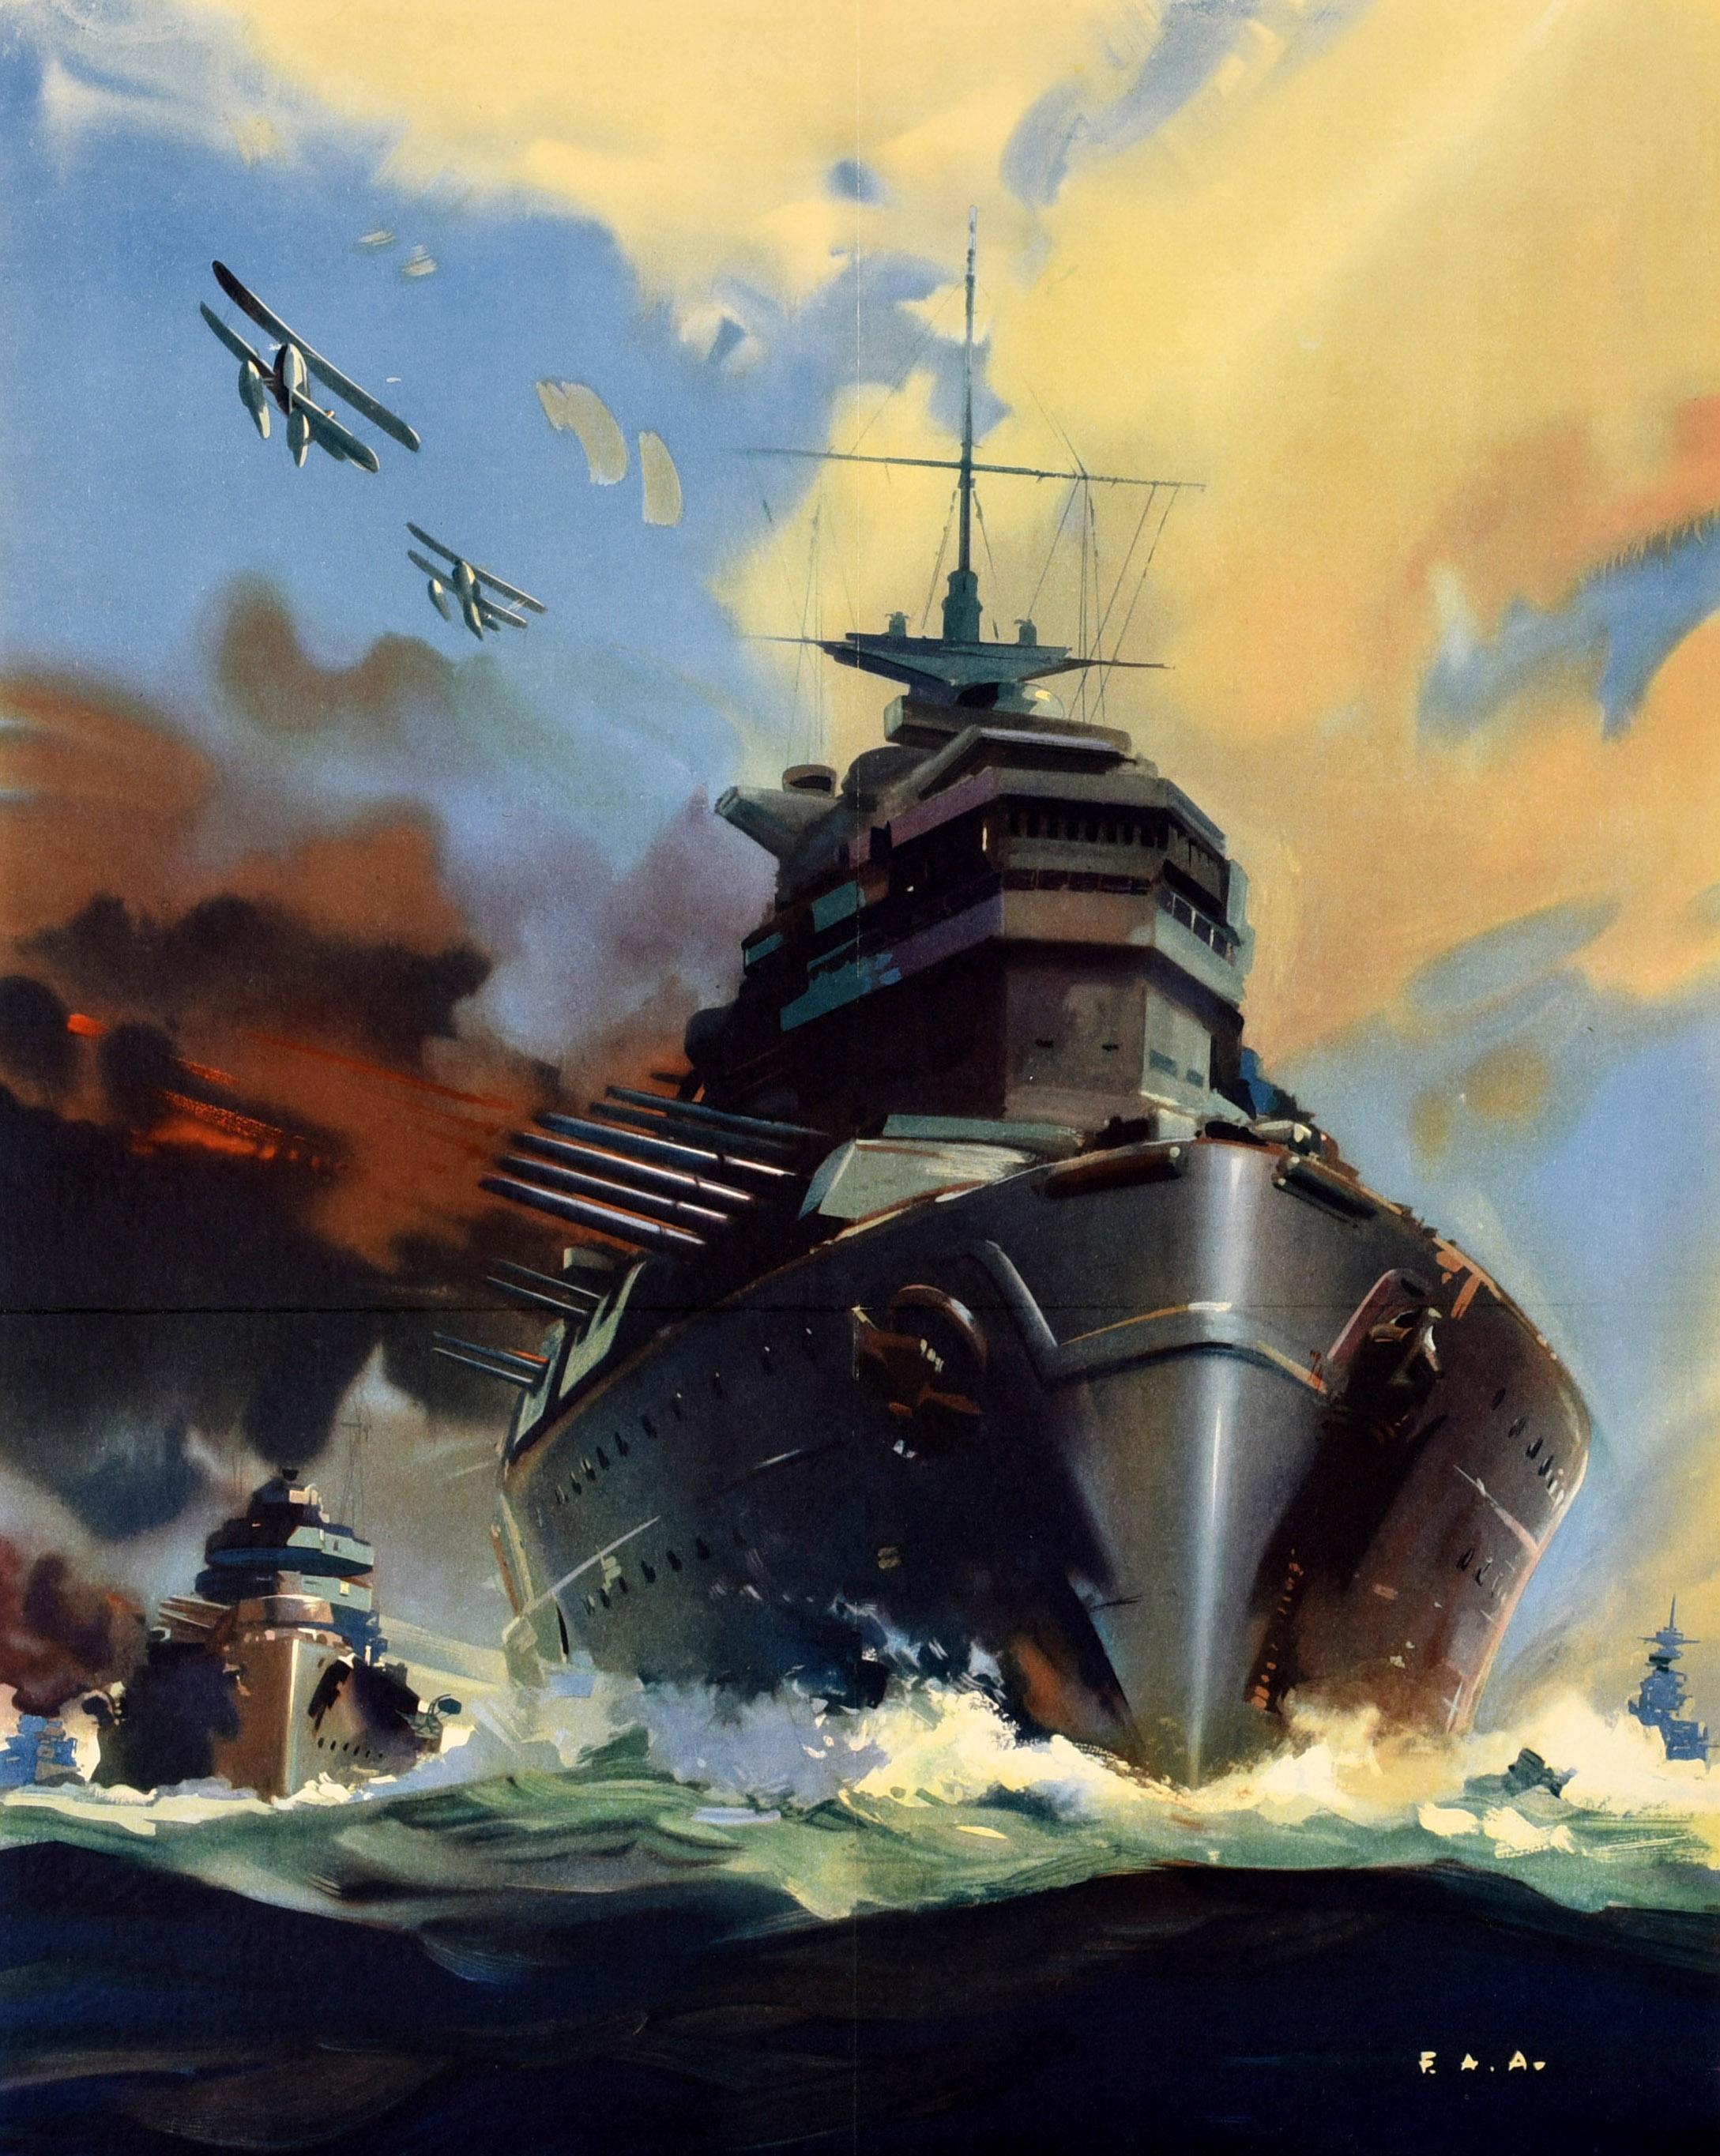 Original-Propagandaplakat für den Zweiten Weltkrieg - Help Britain Finish the Job! - mit einem dynamischen Kunstwerk, das ein Kriegsschiff auf See zeigt, das durch die Wellen auf den Betrachter zustürzt und aus den Kanonen an der Seite raucht, mit